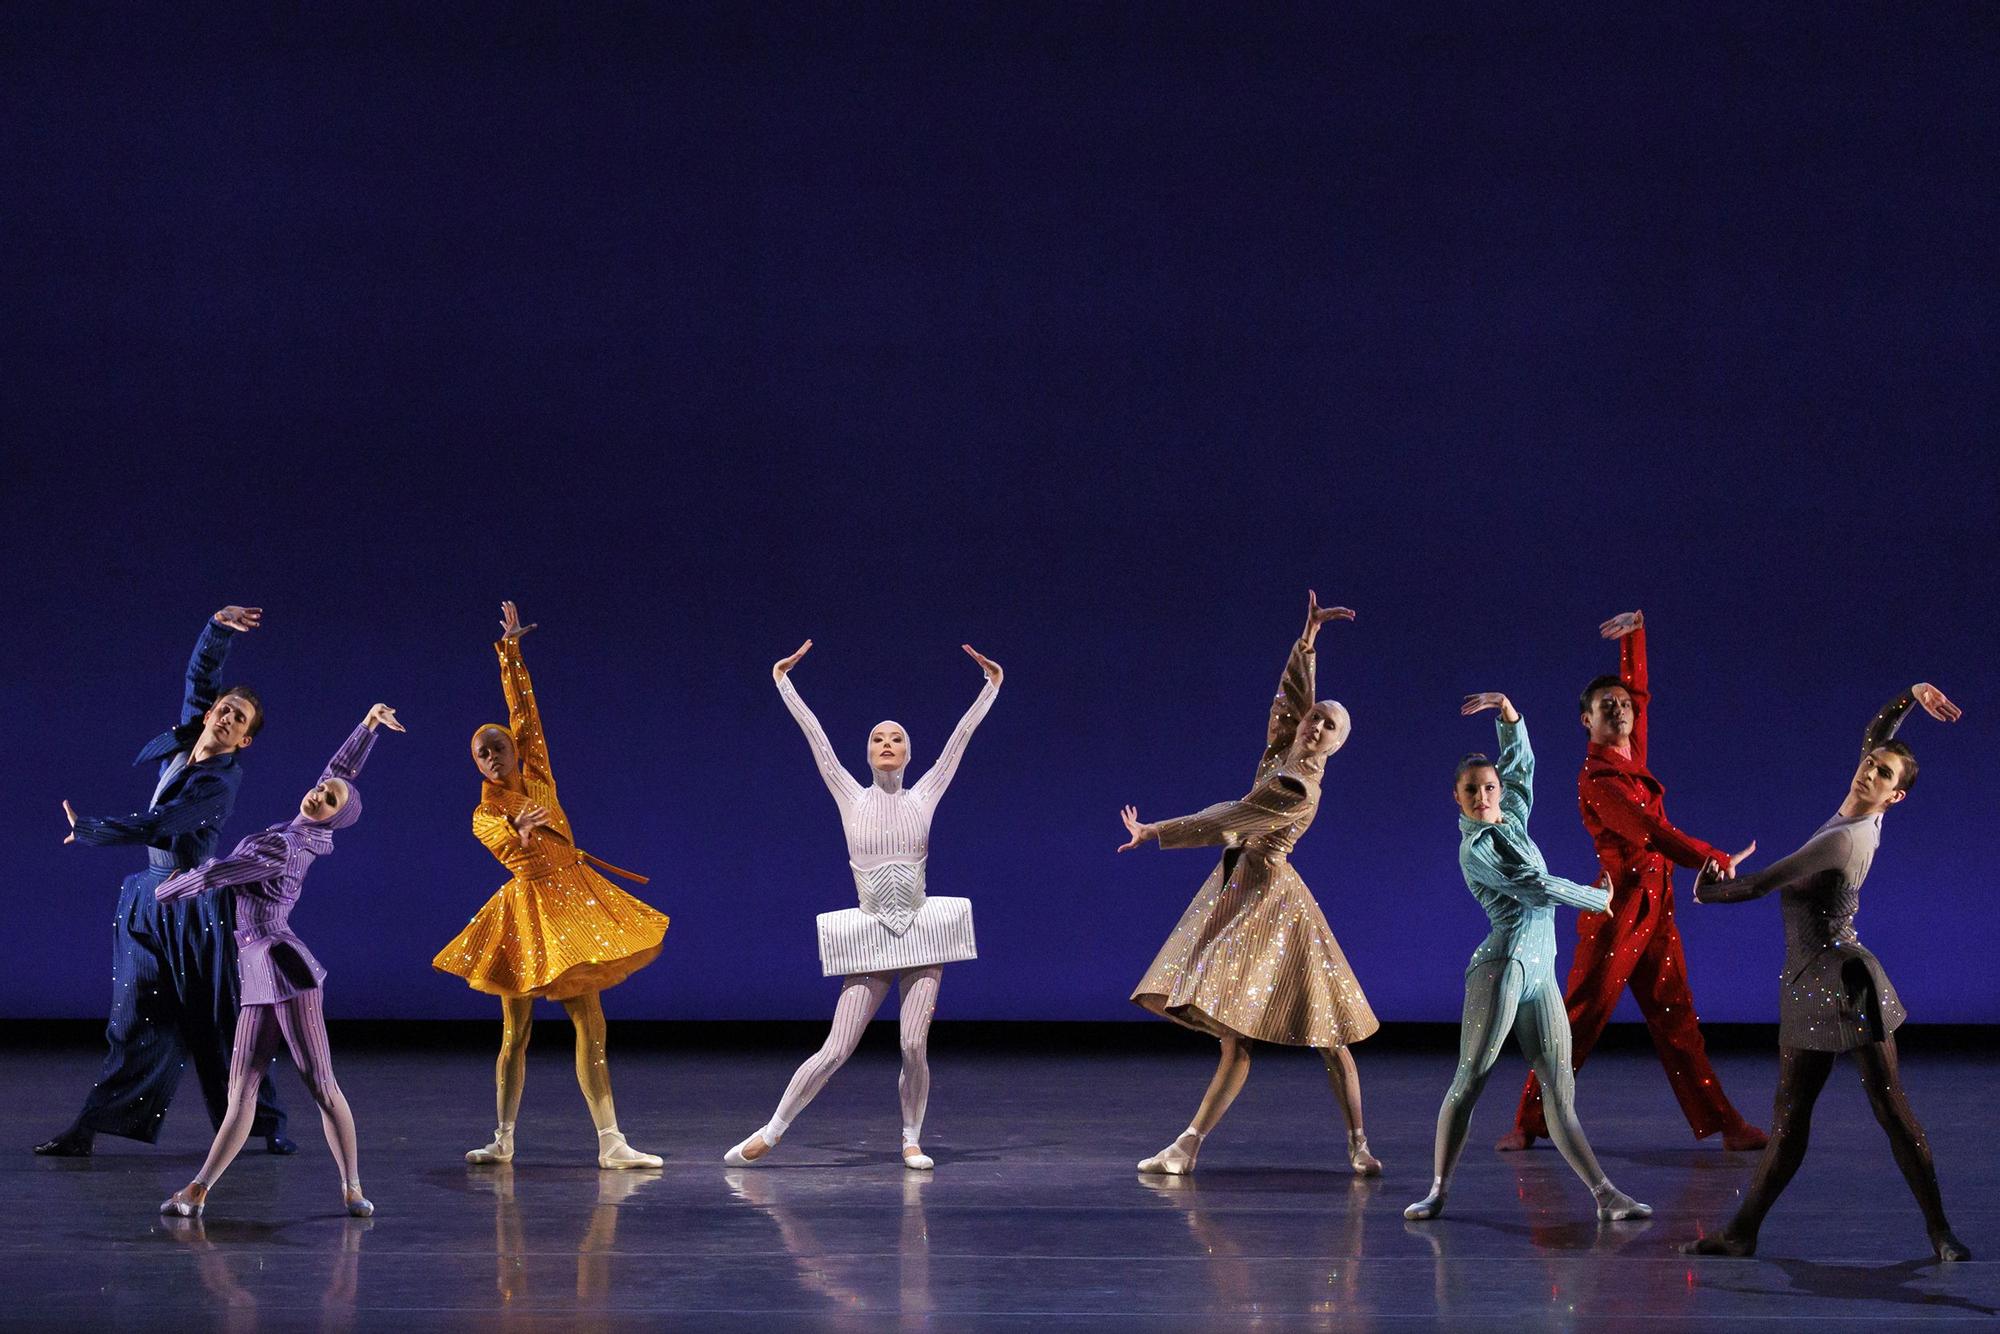 Palomo Spain deslumbra con su vestuario para el ballet de Nueva York